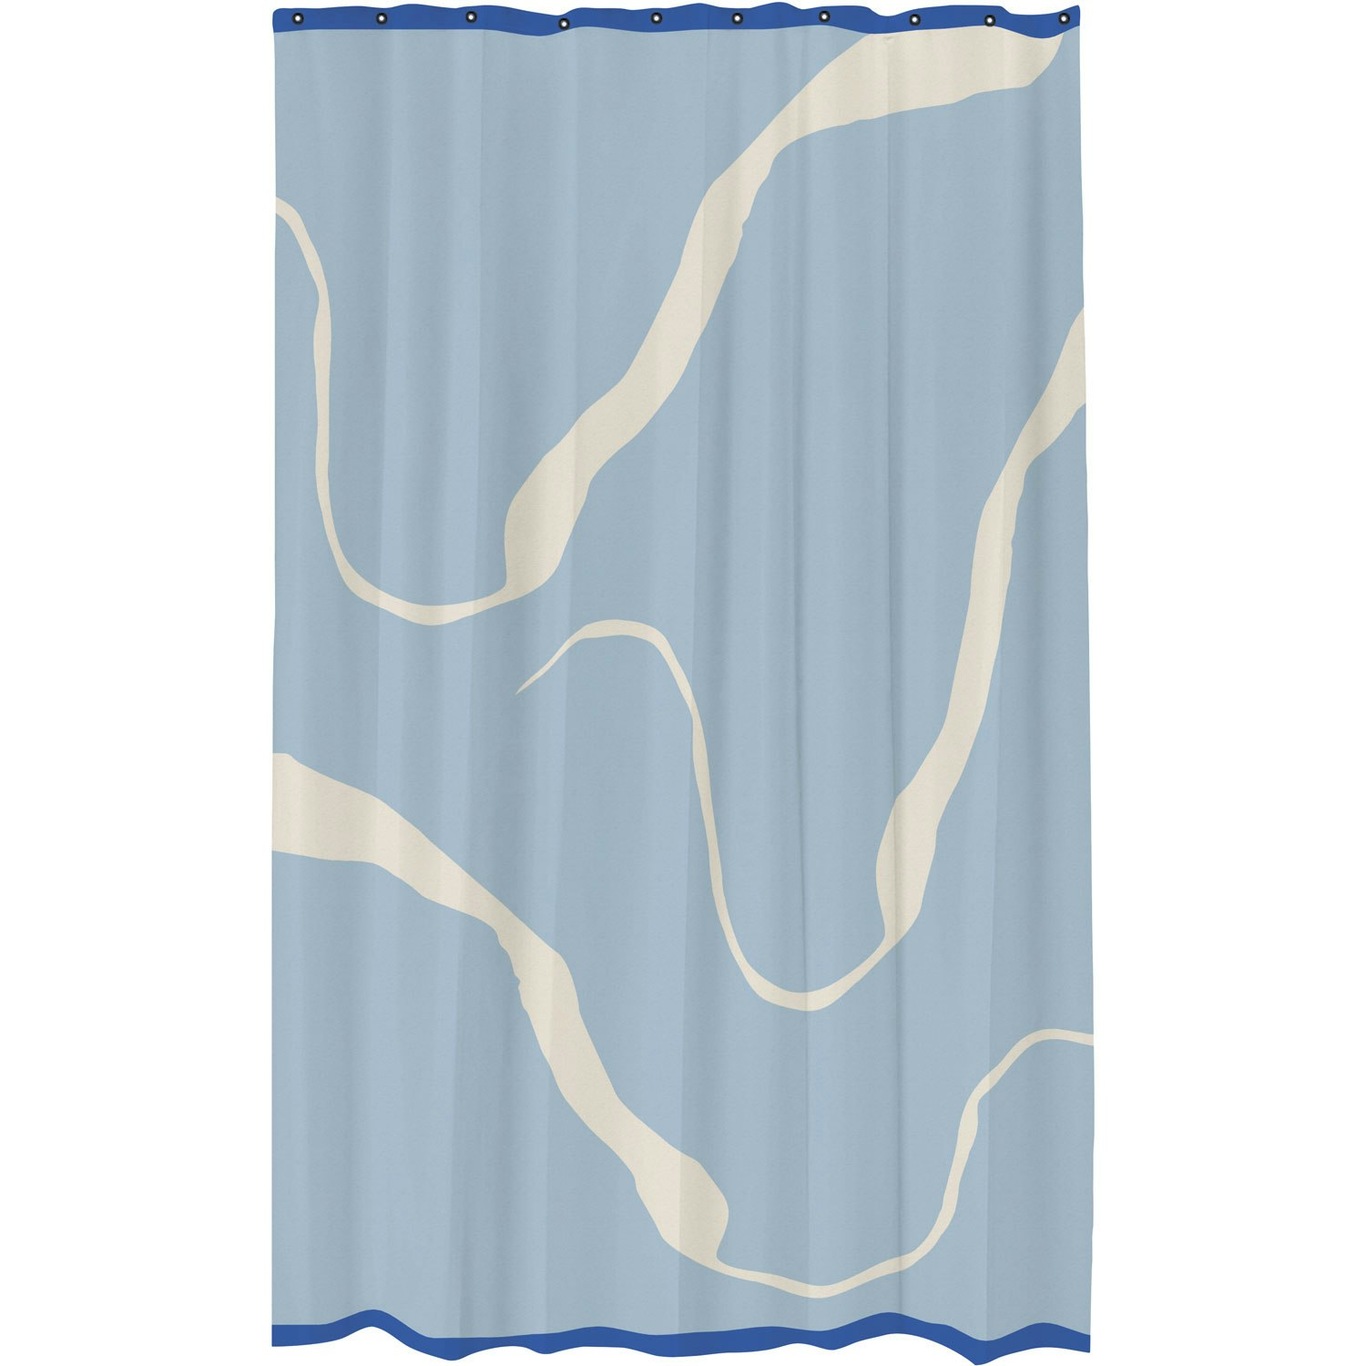 NOVA ARTE Shower Curtain 150x200 cm, Off-white/Light Blue